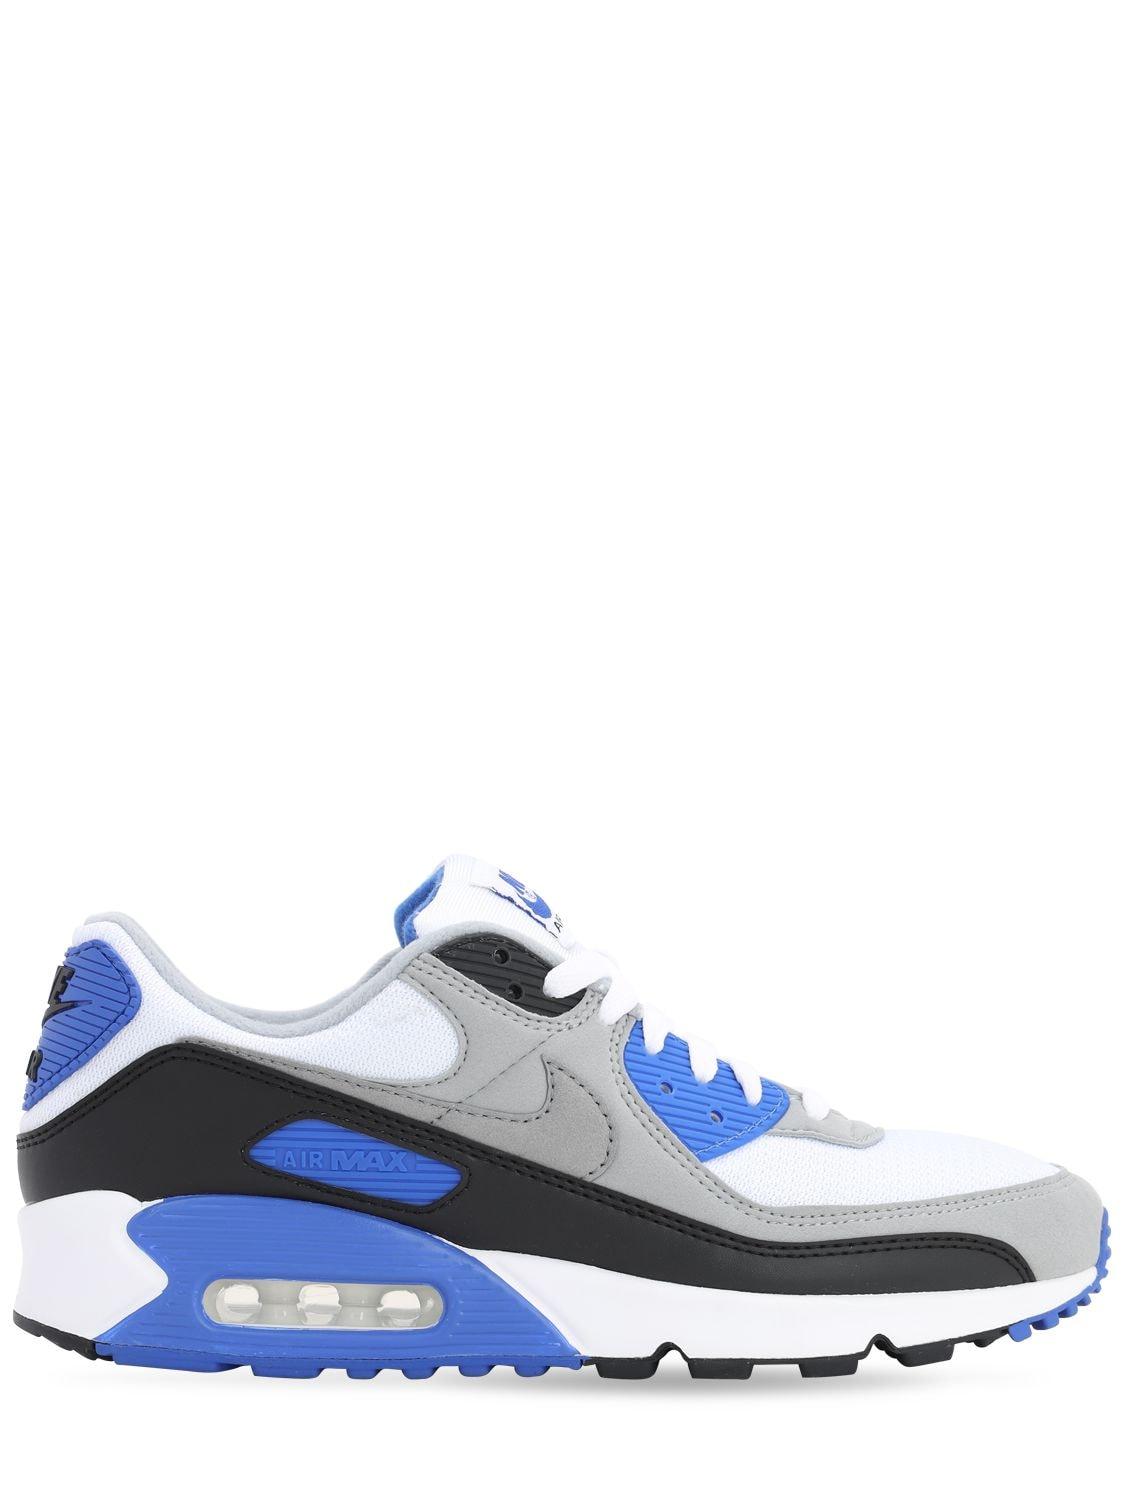 veredicto Se infla Ambiente Air Max 90 Nike de hombre de color Azul | Lyst